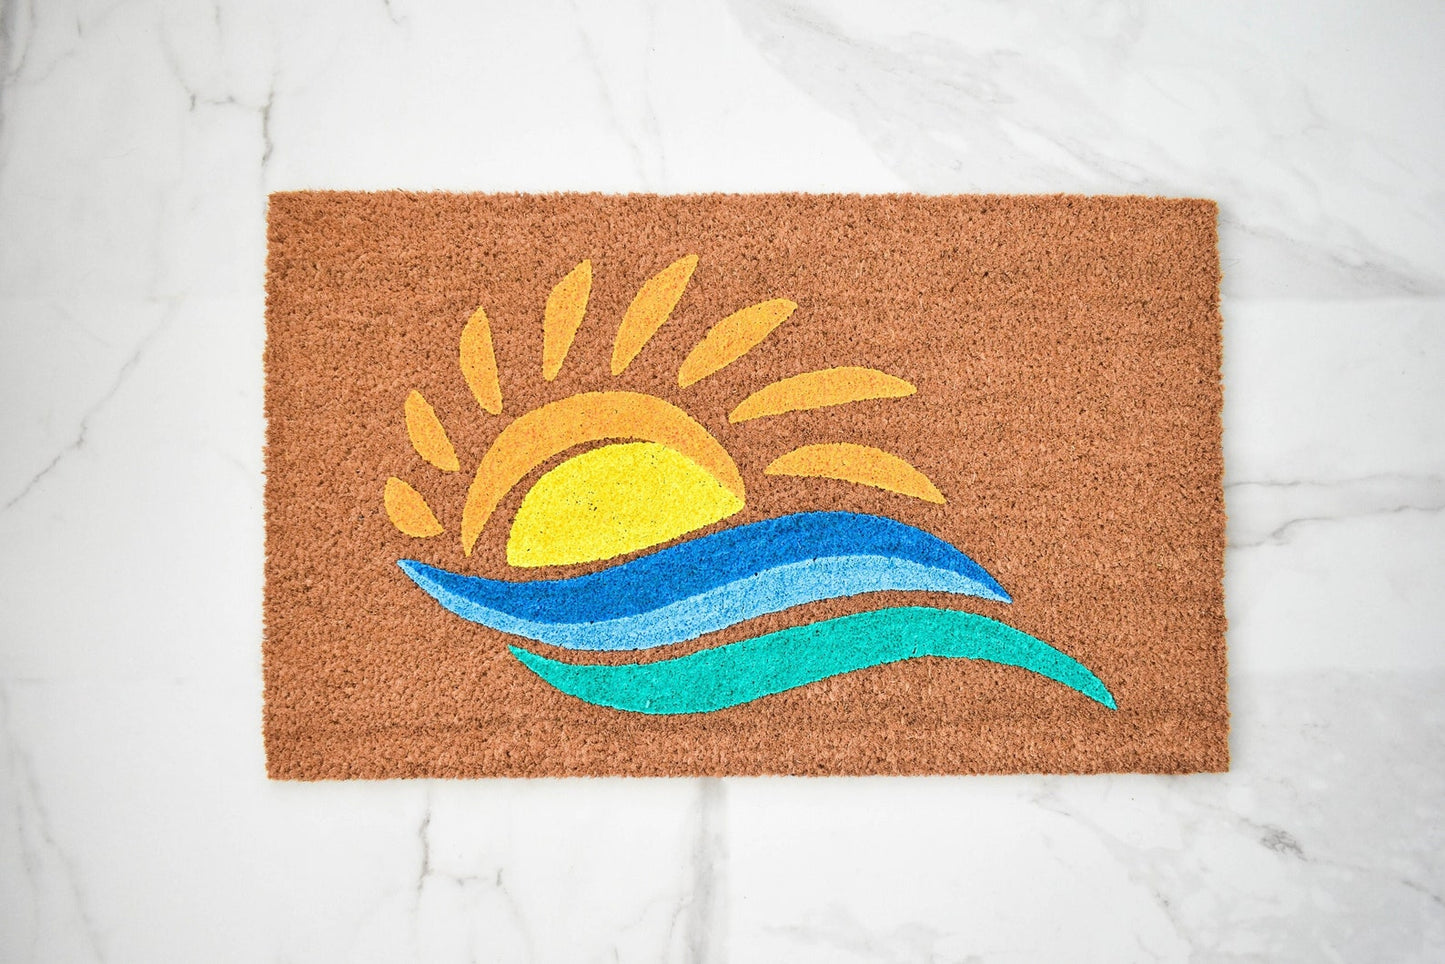 Sun And Water Doormat